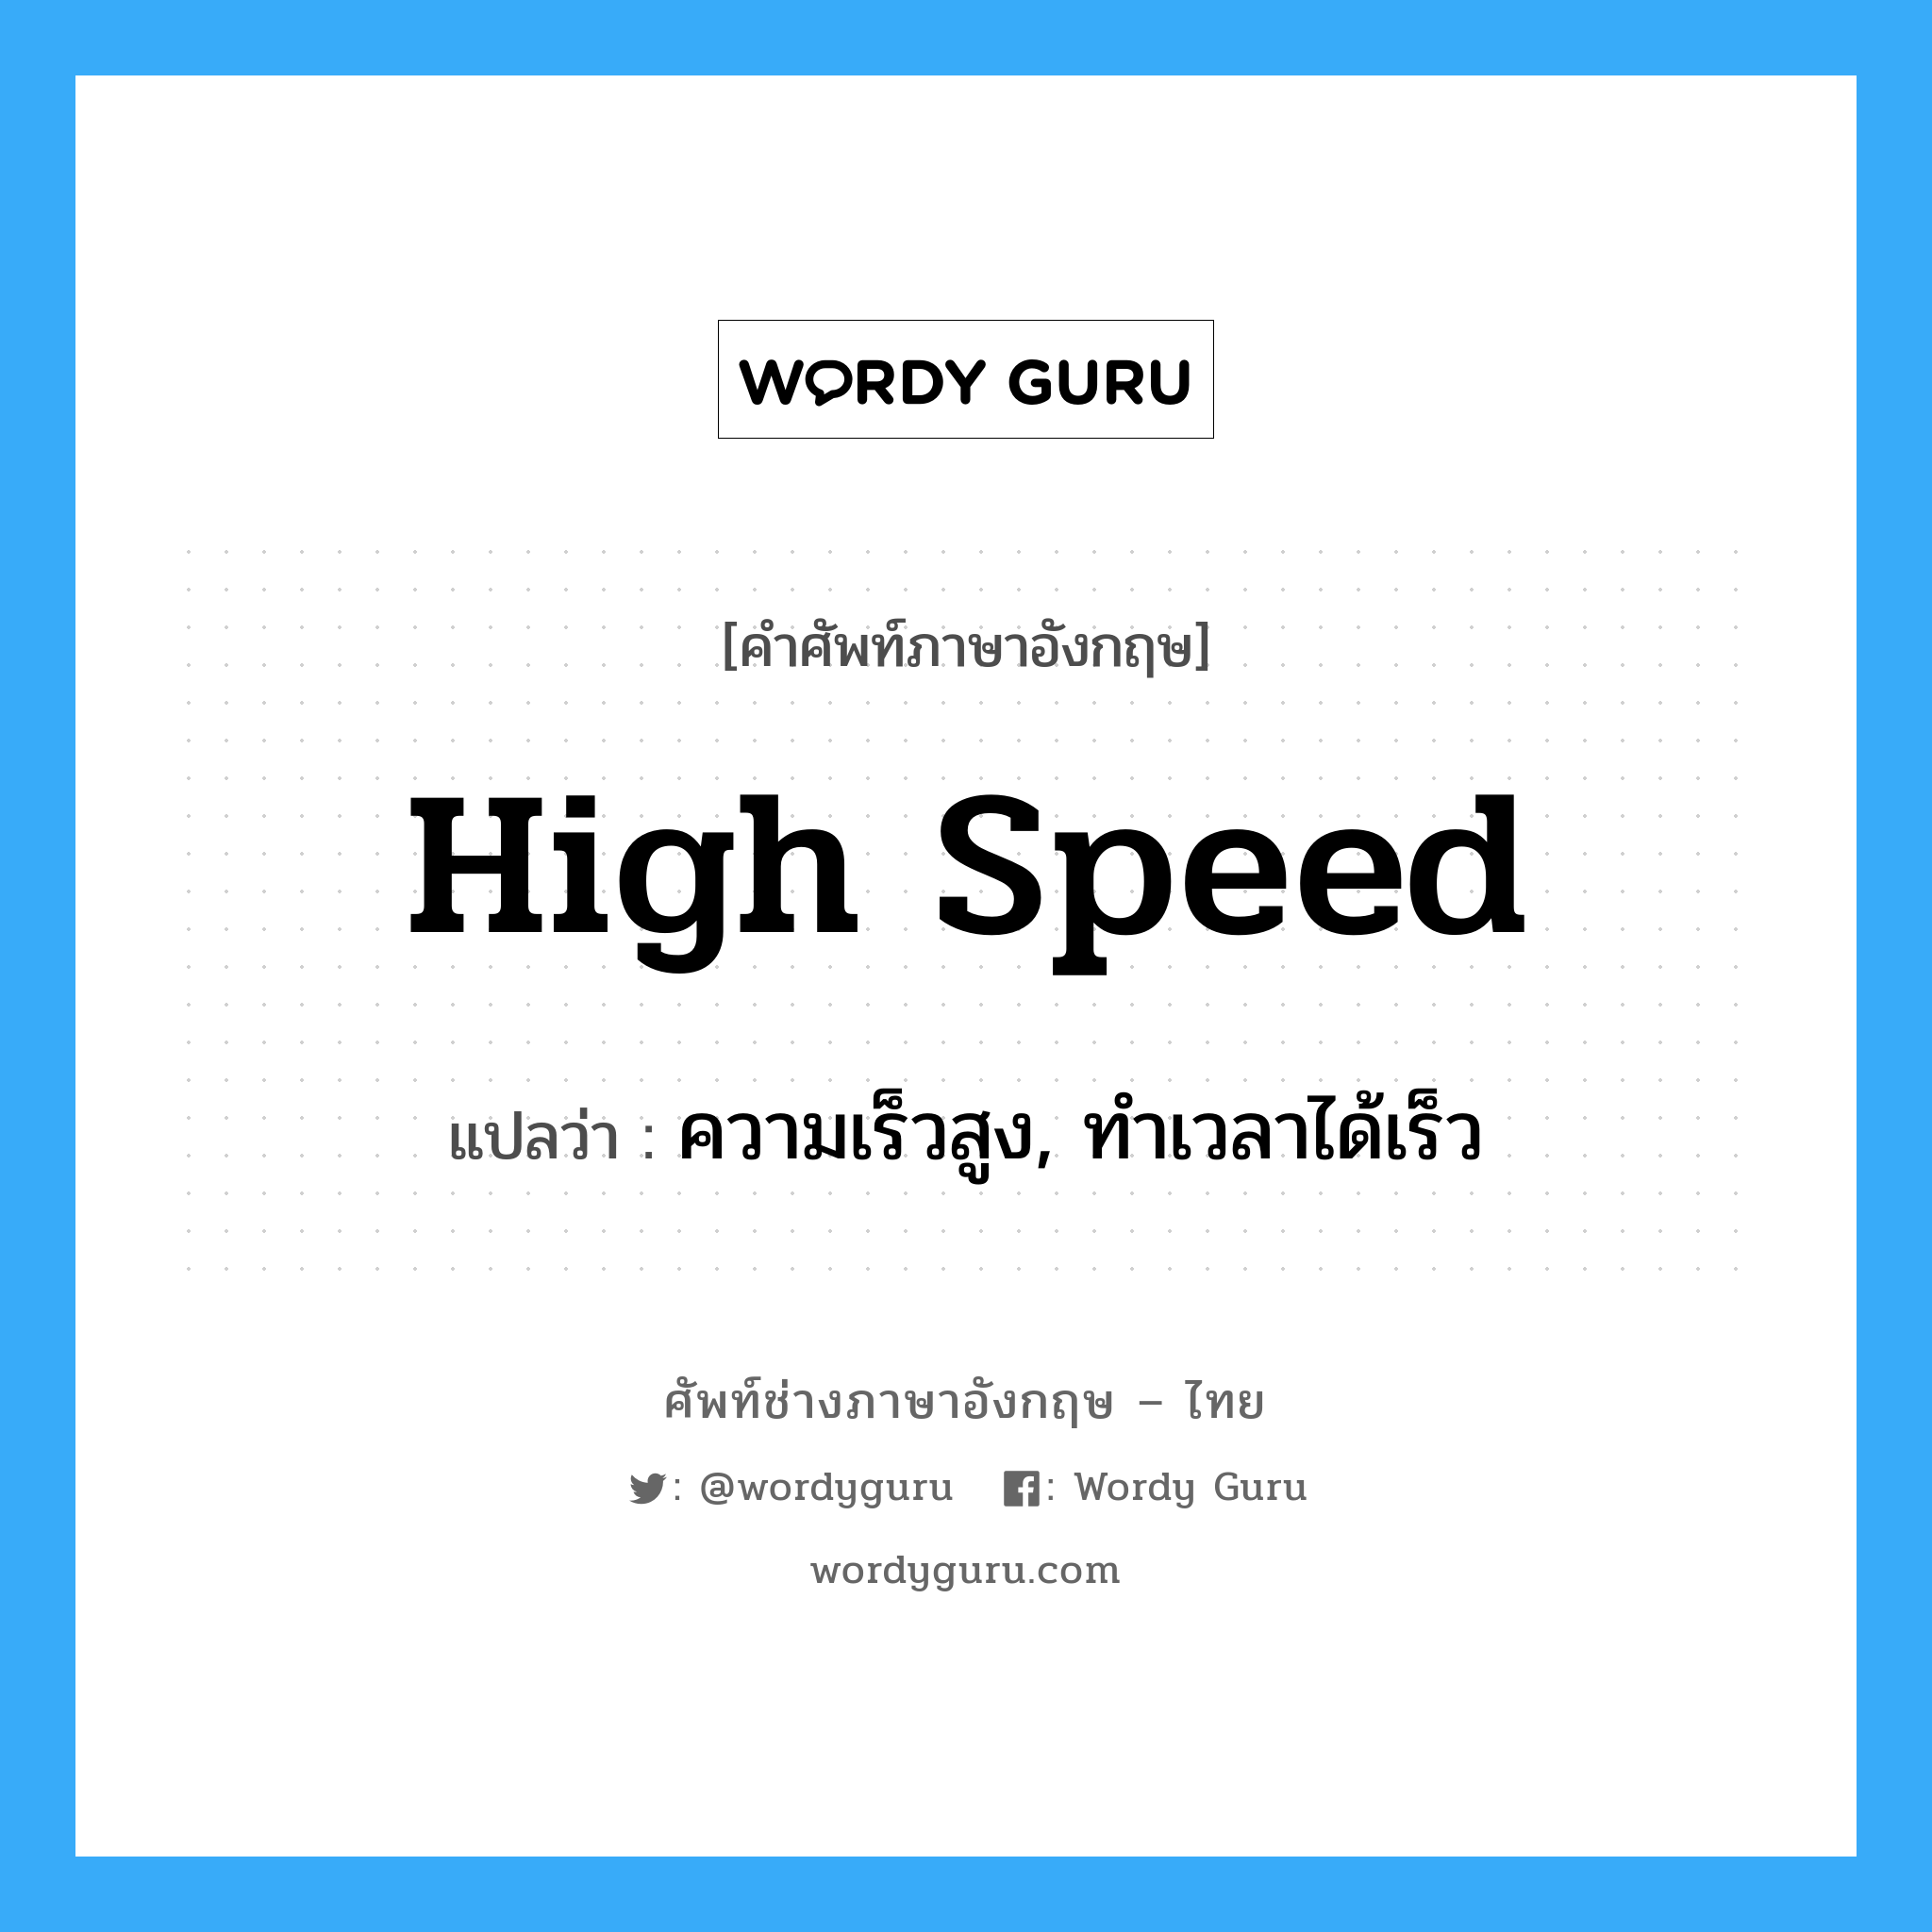 ความเร็วสูง, ทำเวลาได้เร็ว ภาษาอังกฤษ?, คำศัพท์ช่างภาษาอังกฤษ - ไทย ความเร็วสูง, ทำเวลาได้เร็ว คำศัพท์ภาษาอังกฤษ ความเร็วสูง, ทำเวลาได้เร็ว แปลว่า high speed